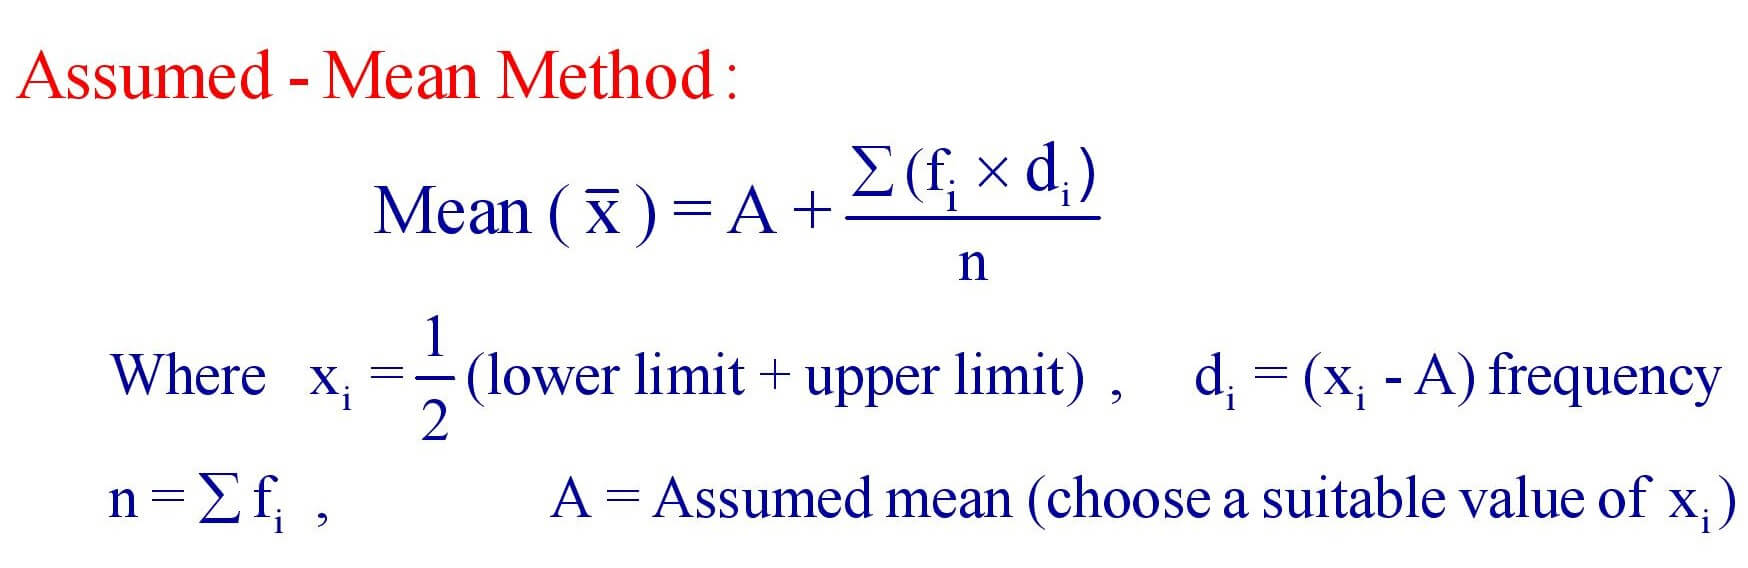 Assumed - Mean Method Formula